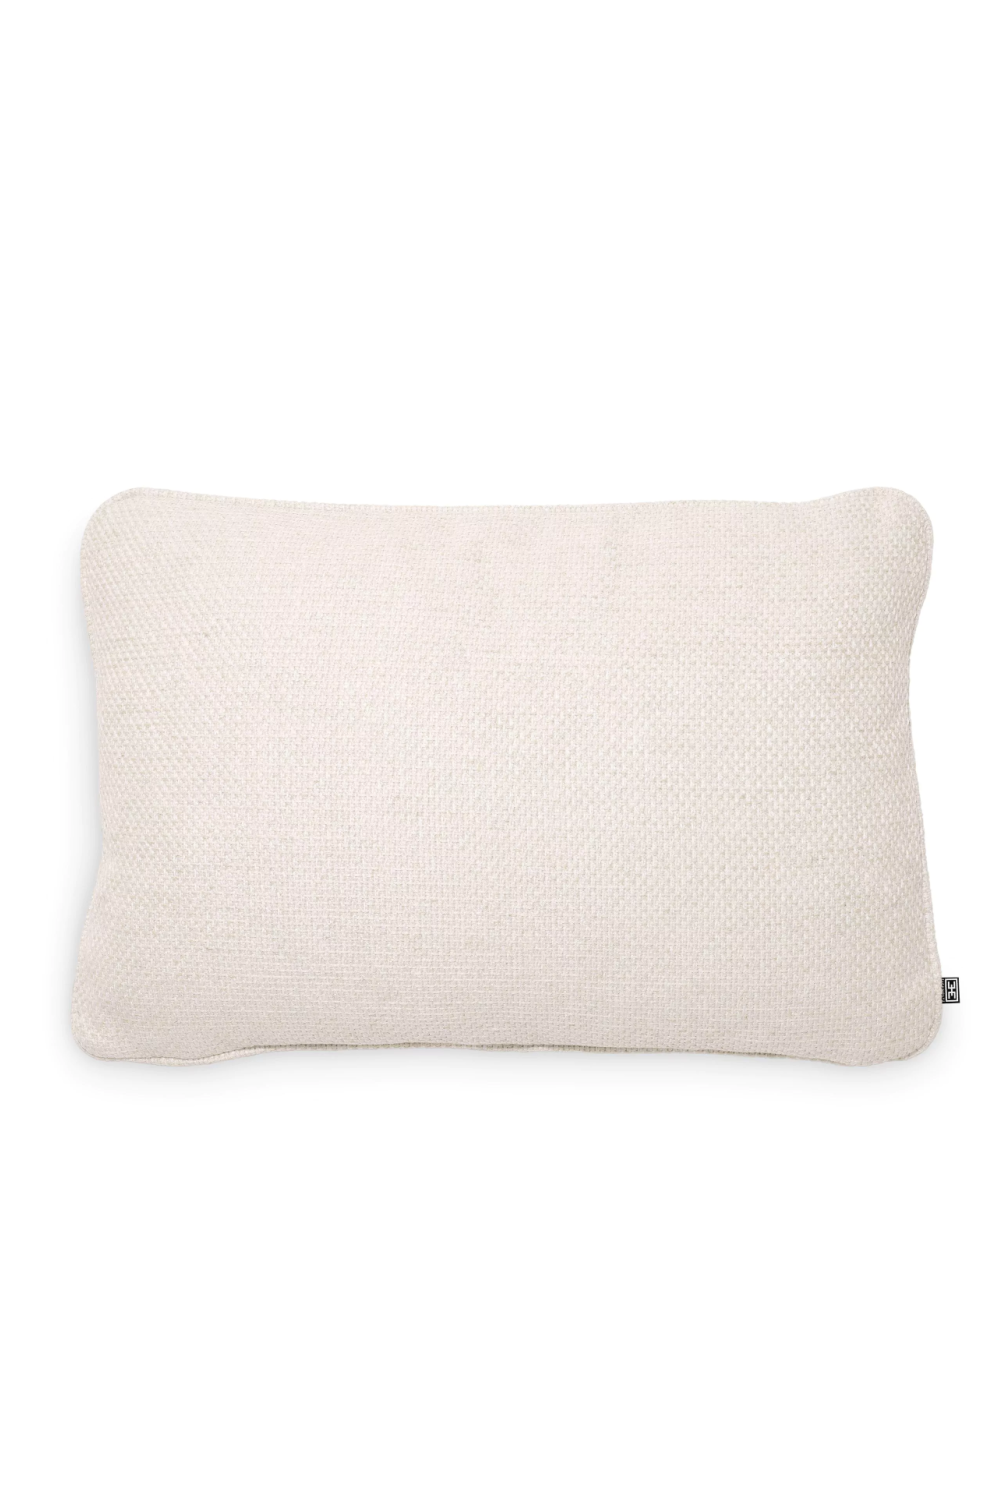 Natural Minimalist Cushion | Eichholtz Pausa | Oroa.com